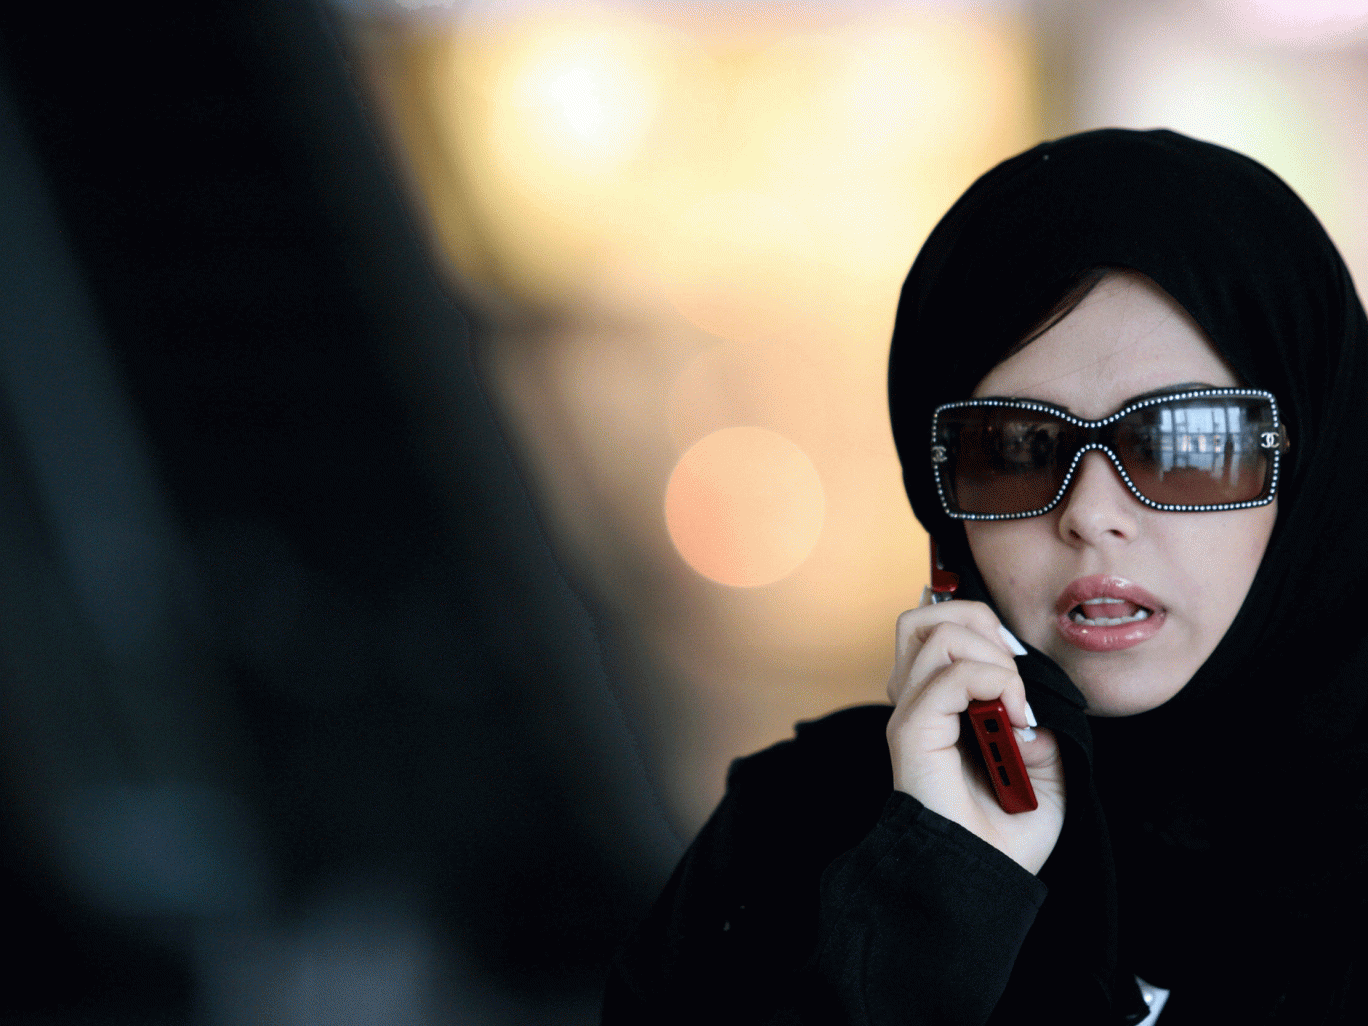 Σαουδική Αραβία: Χώρισε τον άντρα της επειδή είναι κοντός!